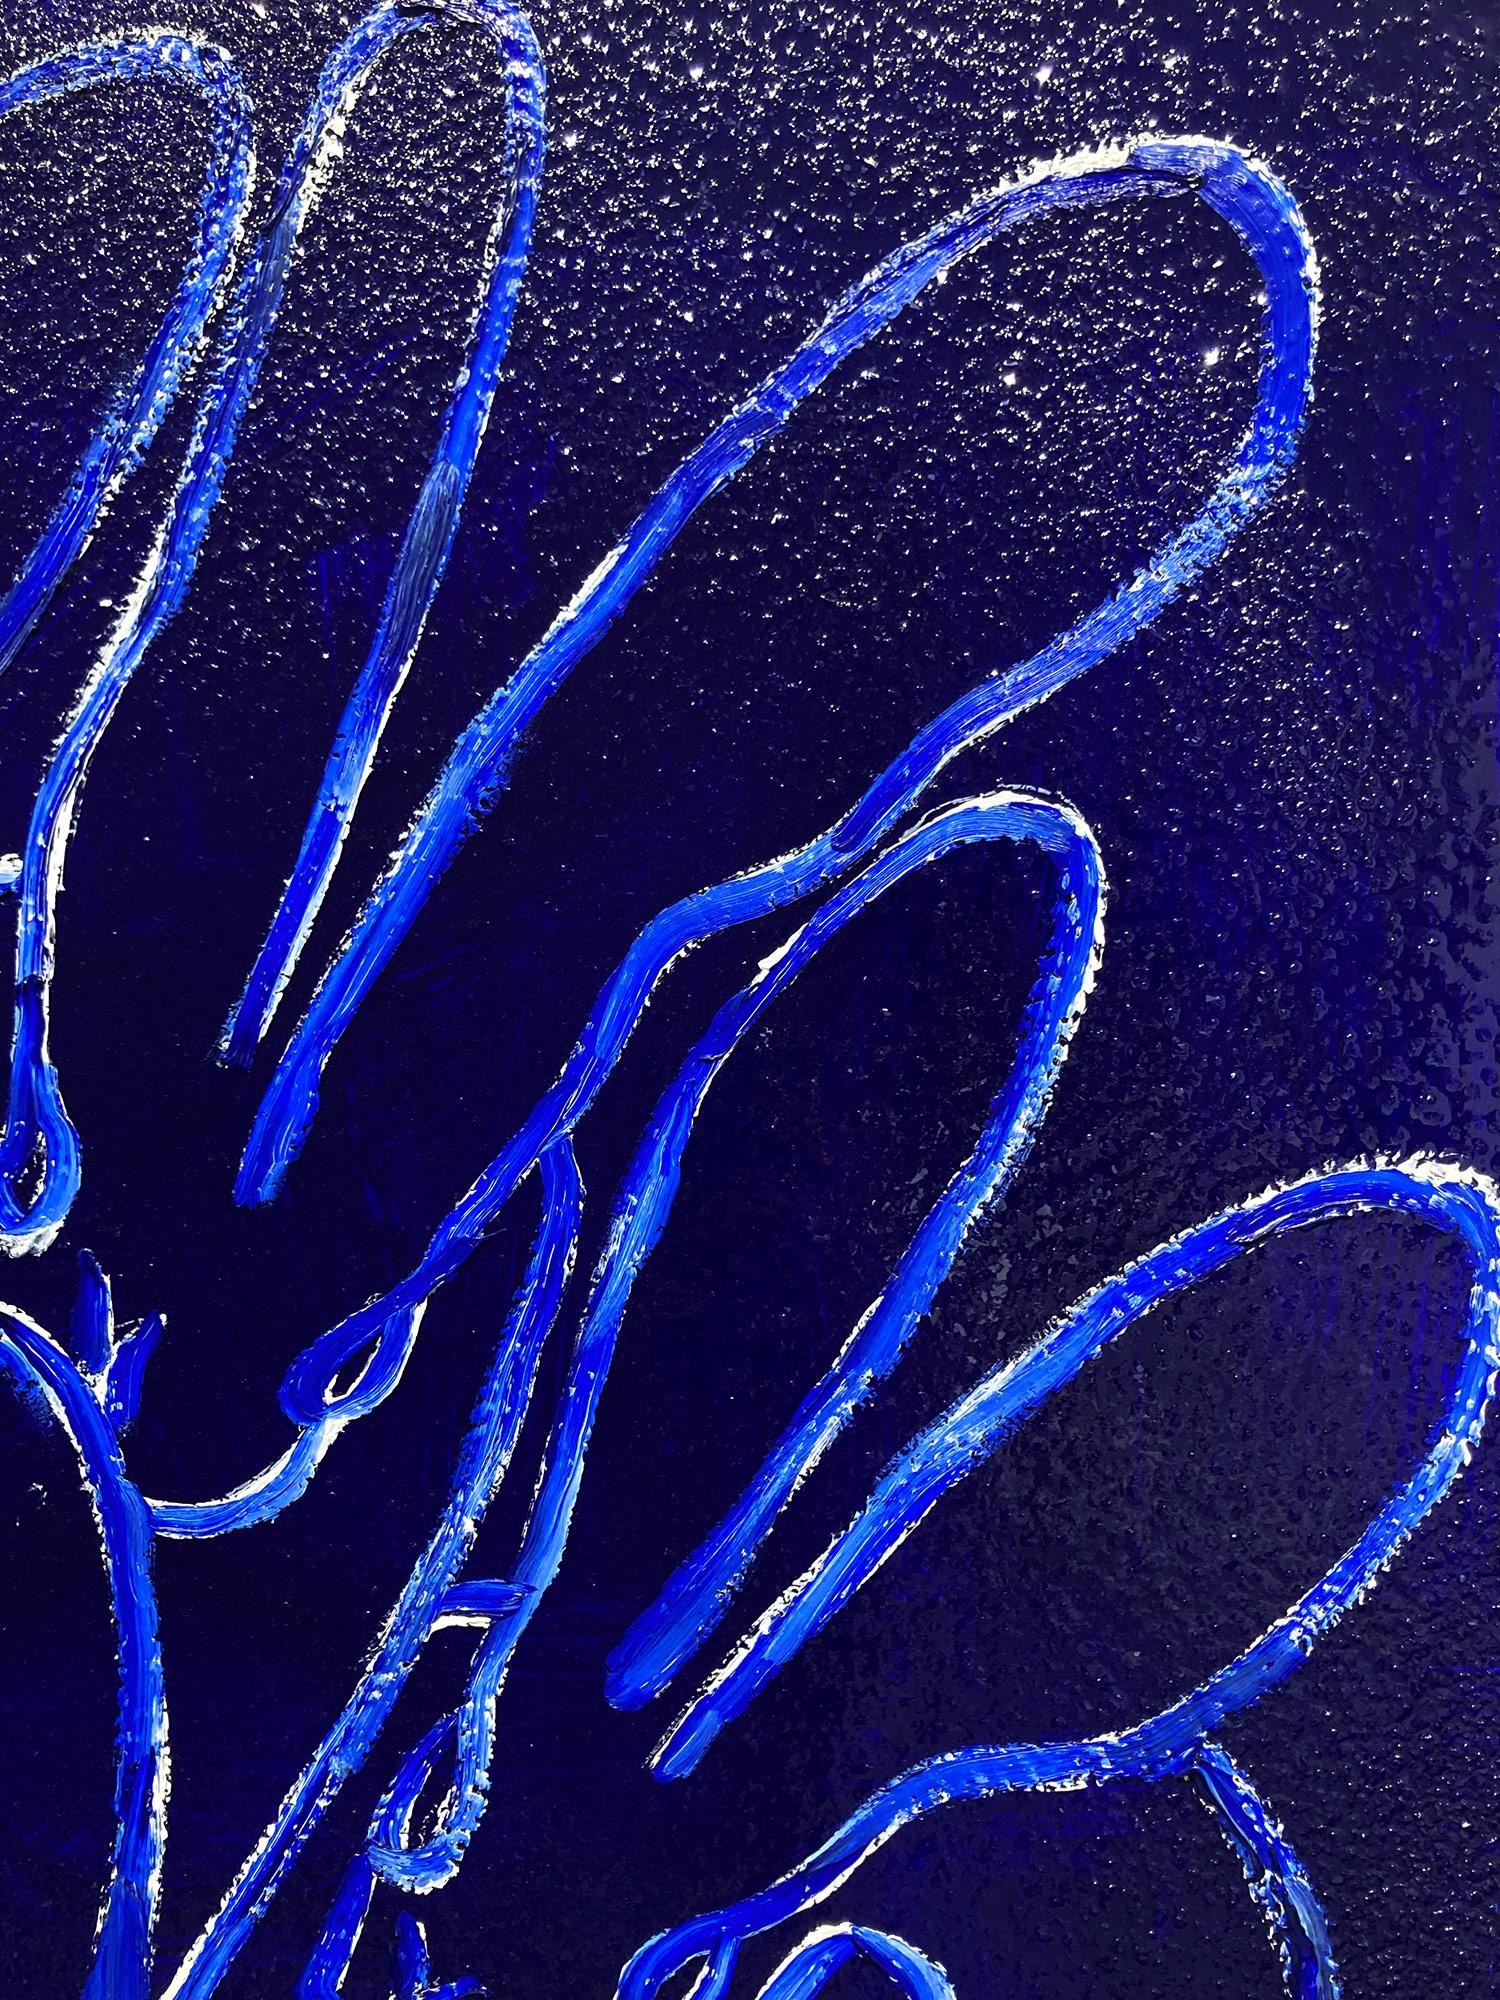 Eine wunderbare Komposition eines der ikonischsten Themen von Slonem, nämlich Hasen. Dieses Werk zeigt gestische Figuren weißer Hasen auf einem Ultramarinblauen Hintergrund mit dickem Farbauftrag und Diamantstaub. Inspiriert von der Natur und einer